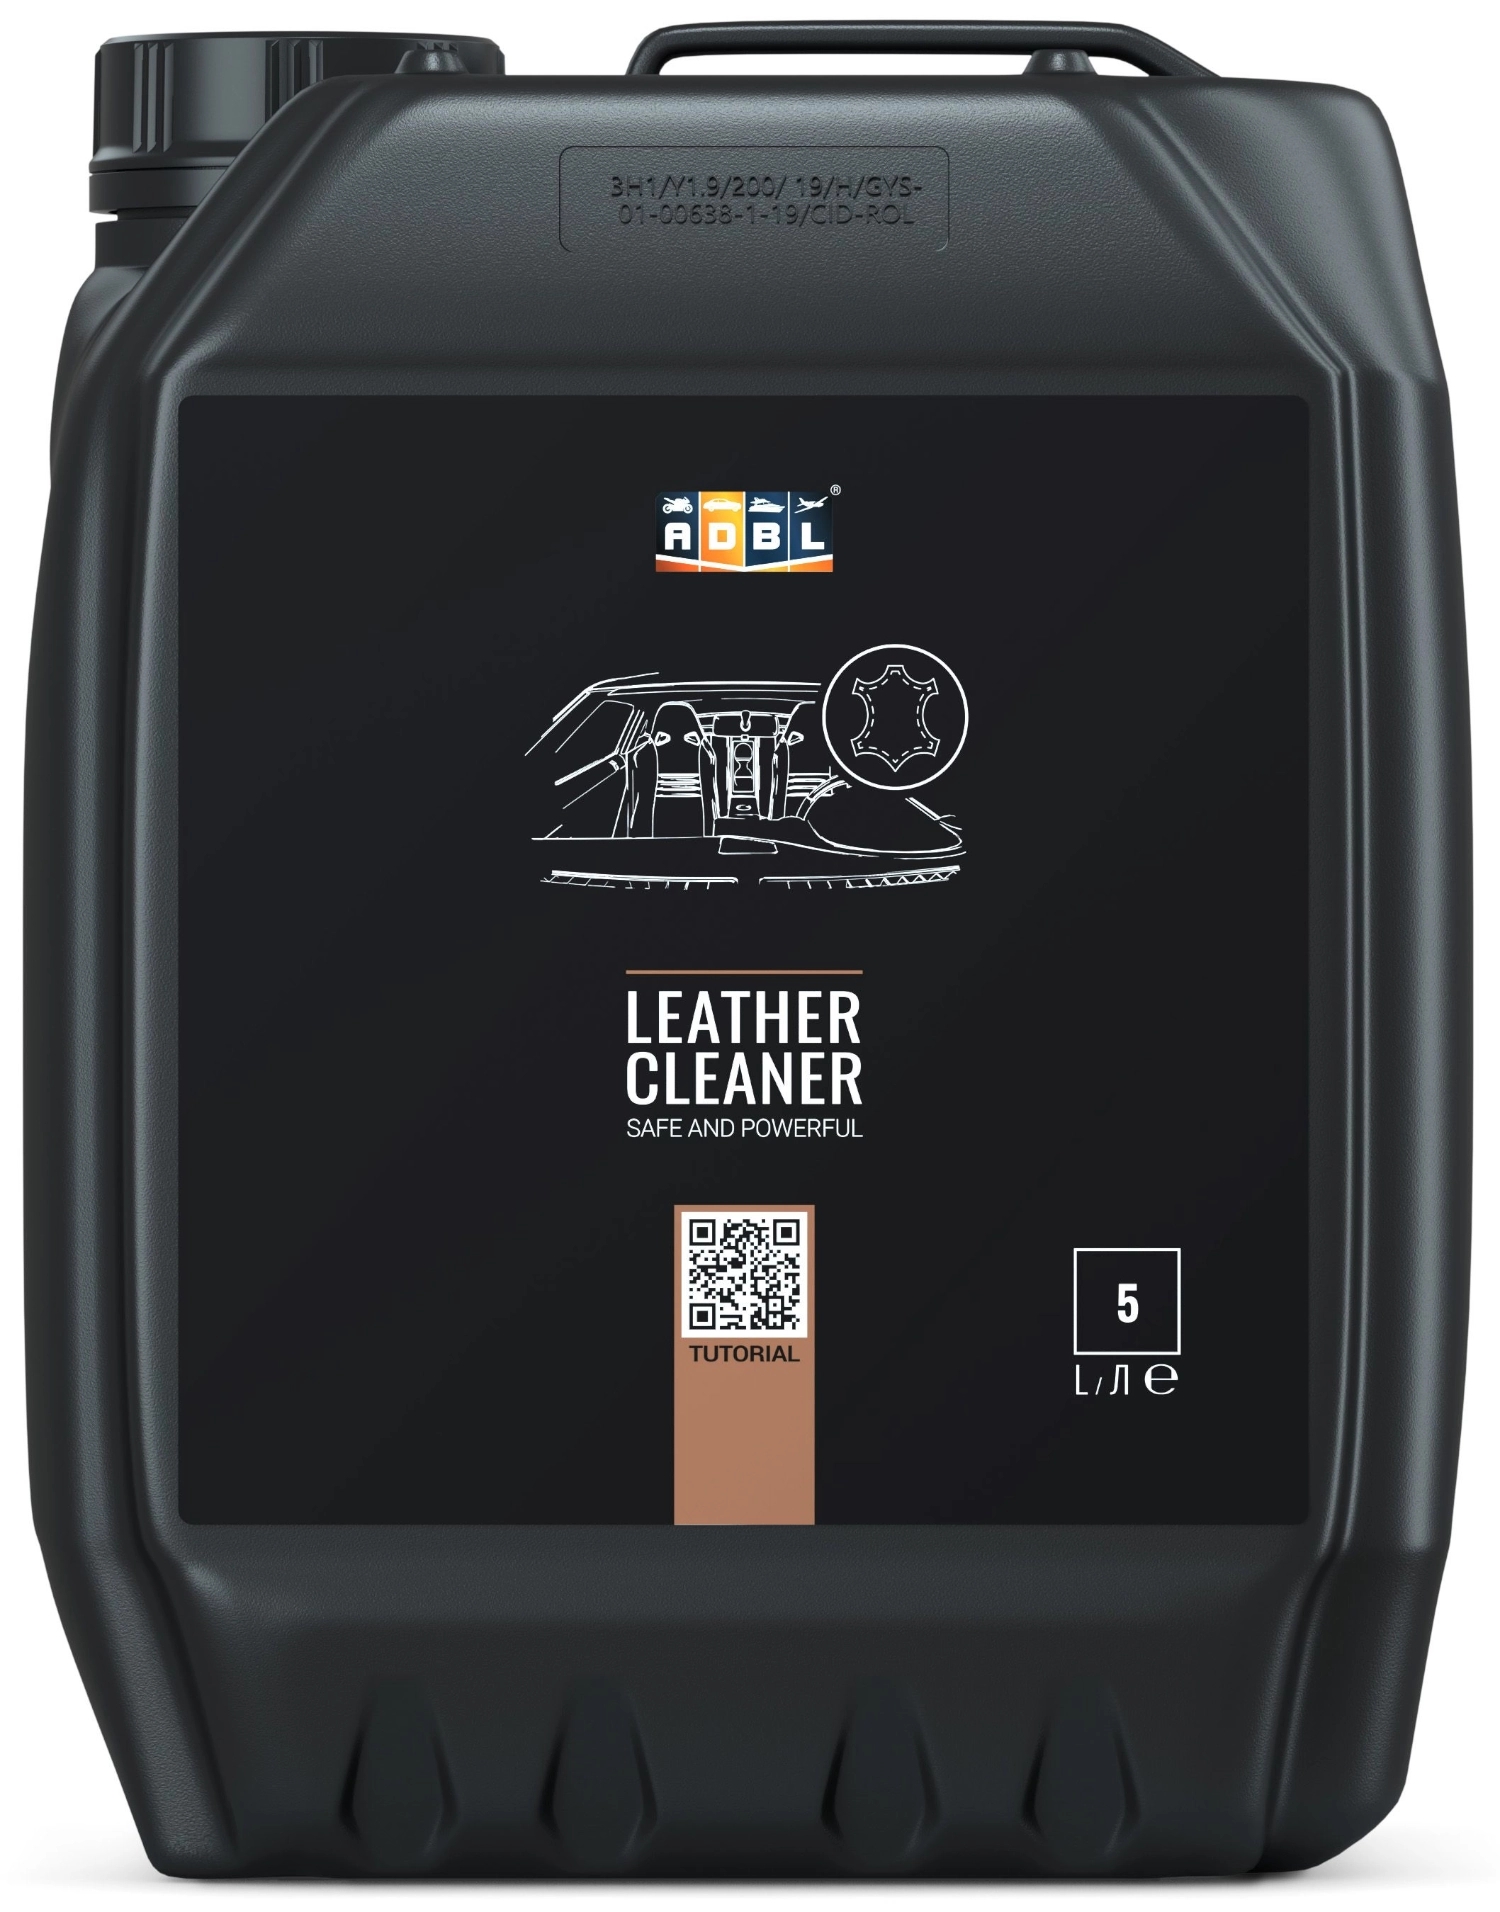 Image of ADBL Leather Cleaner – produkt do czyszczenia skóry, nie wysusza powierzchni 5L